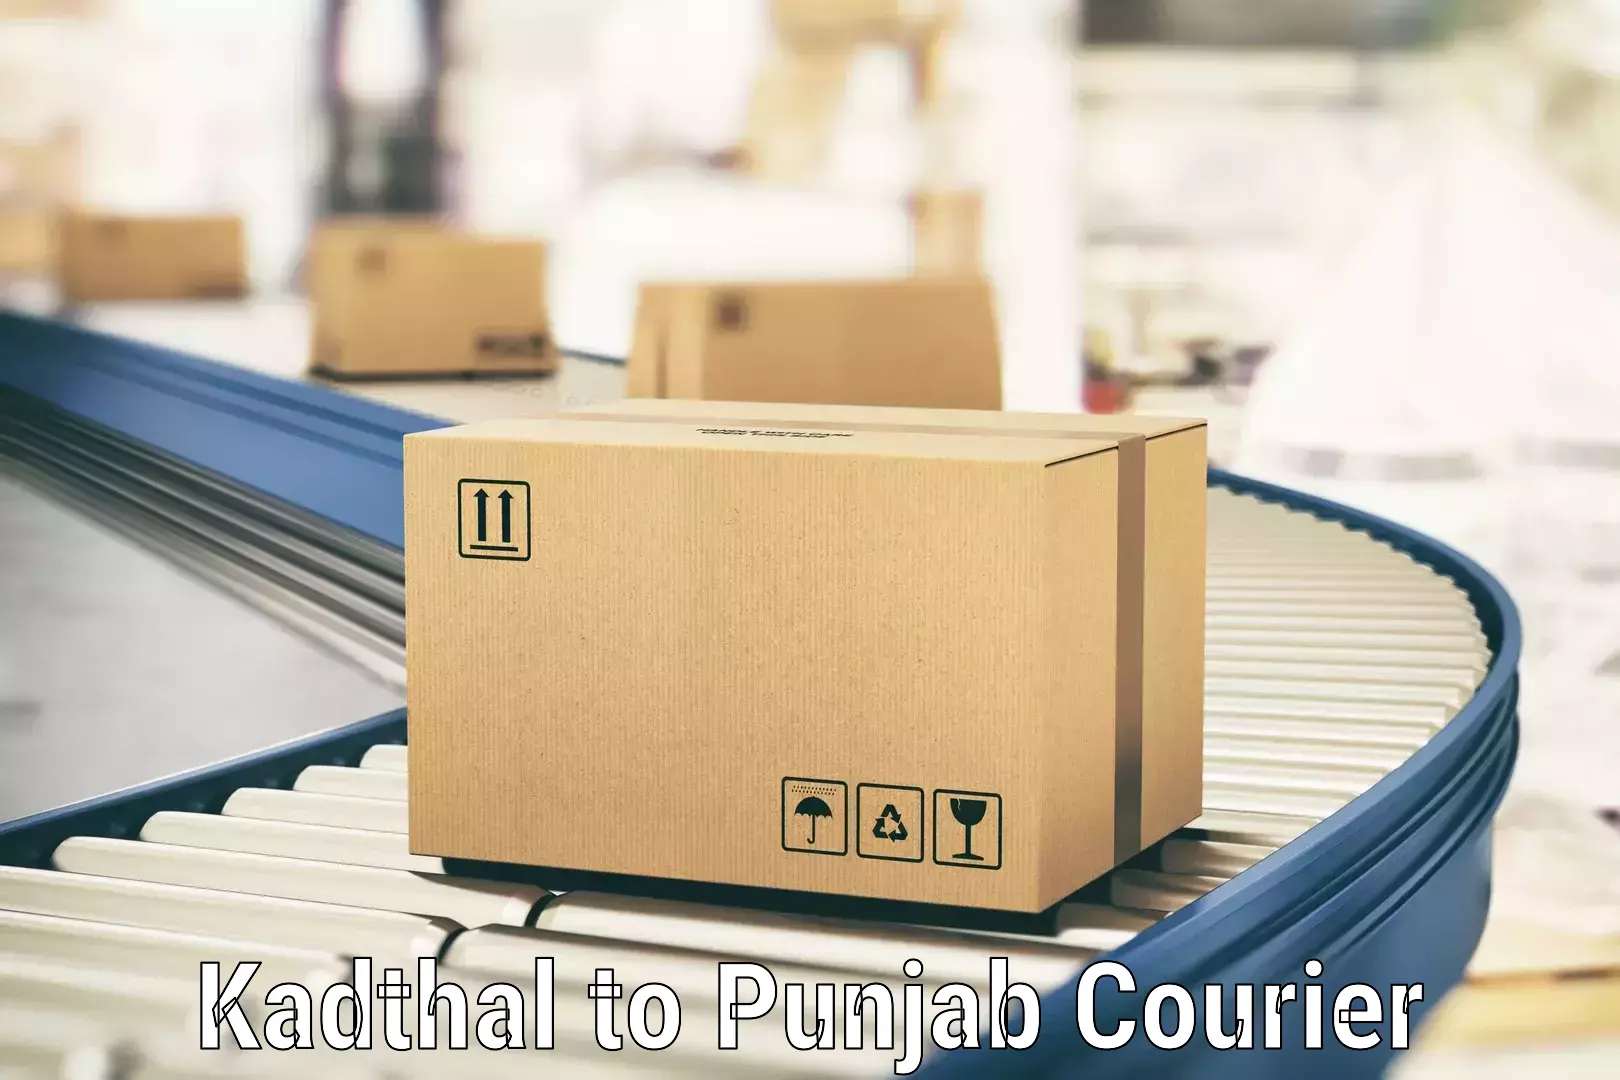 Specialized shipment handling Kadthal to Jalandhar